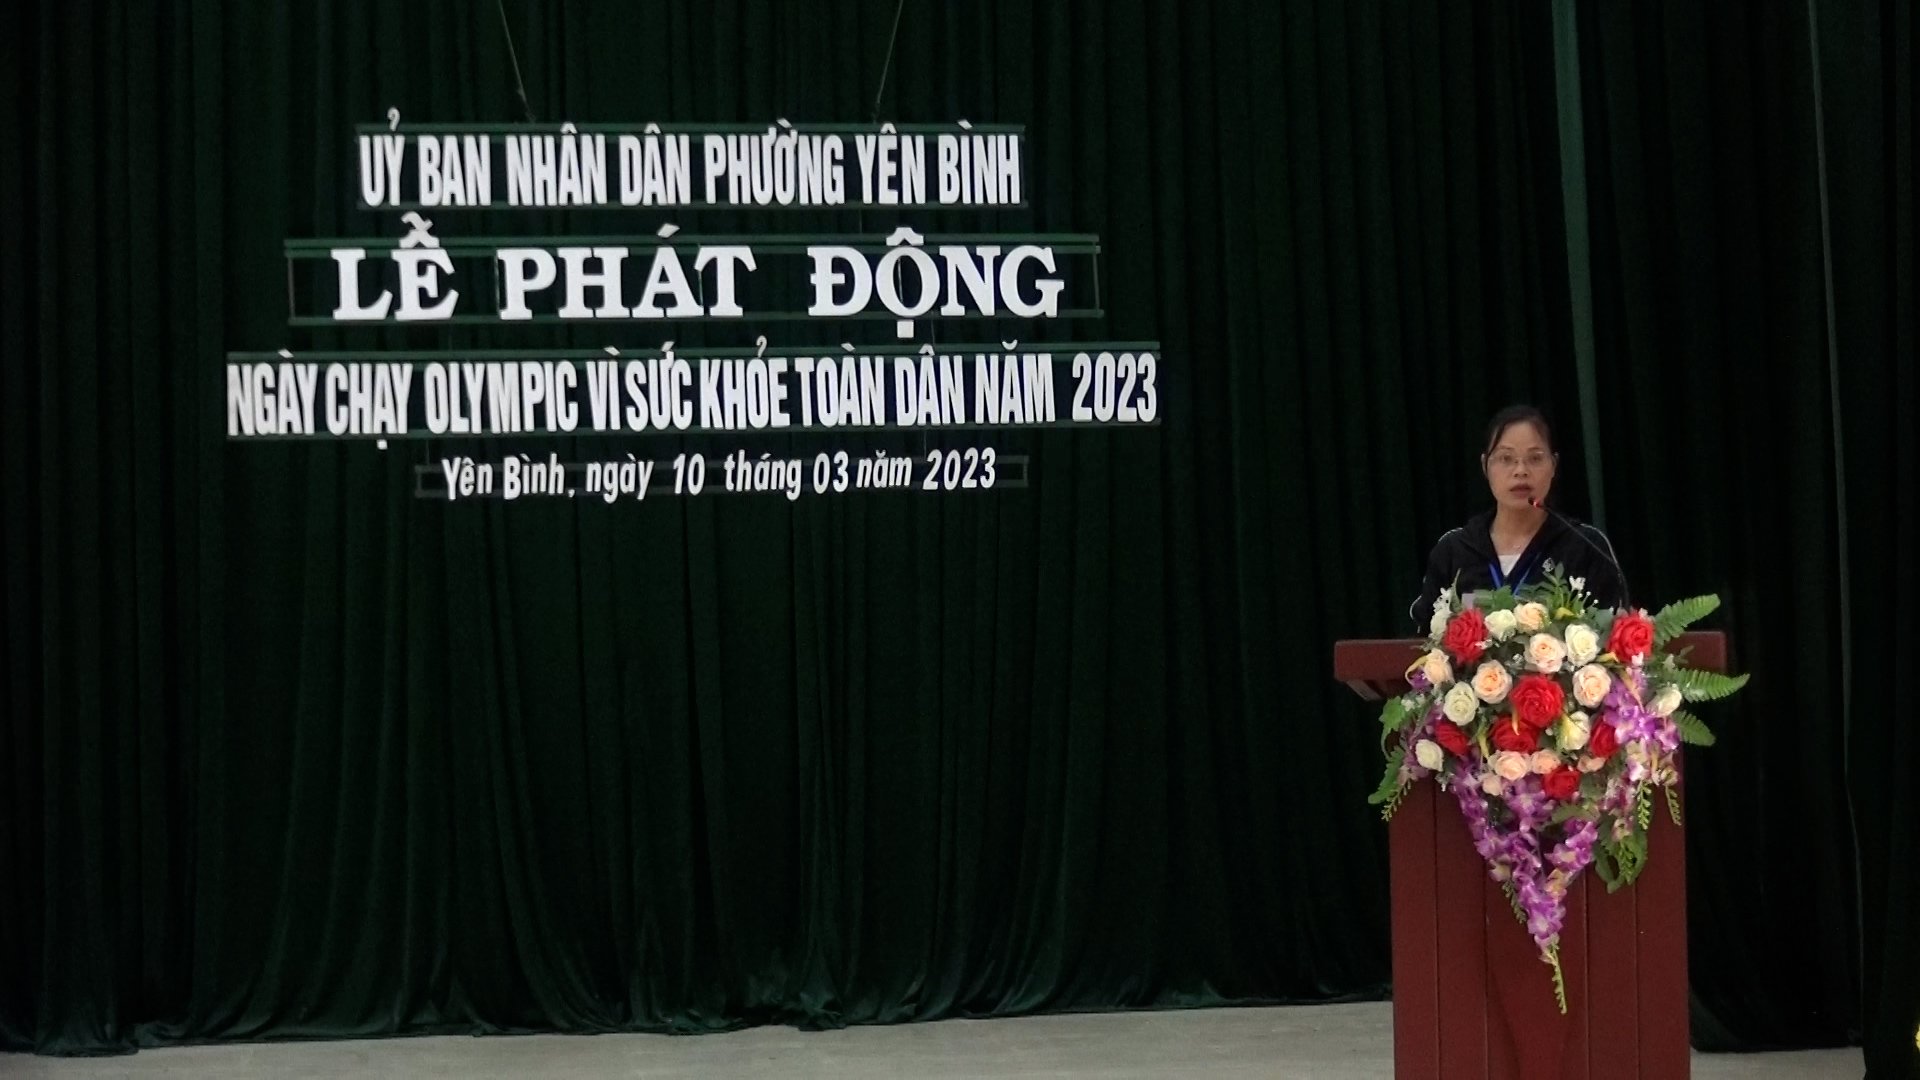 UBND phường Yên Bình tổ chức Lễ phát động “Ngày chạy Olympic vì sức khỏe toàn dân năm 2023”.